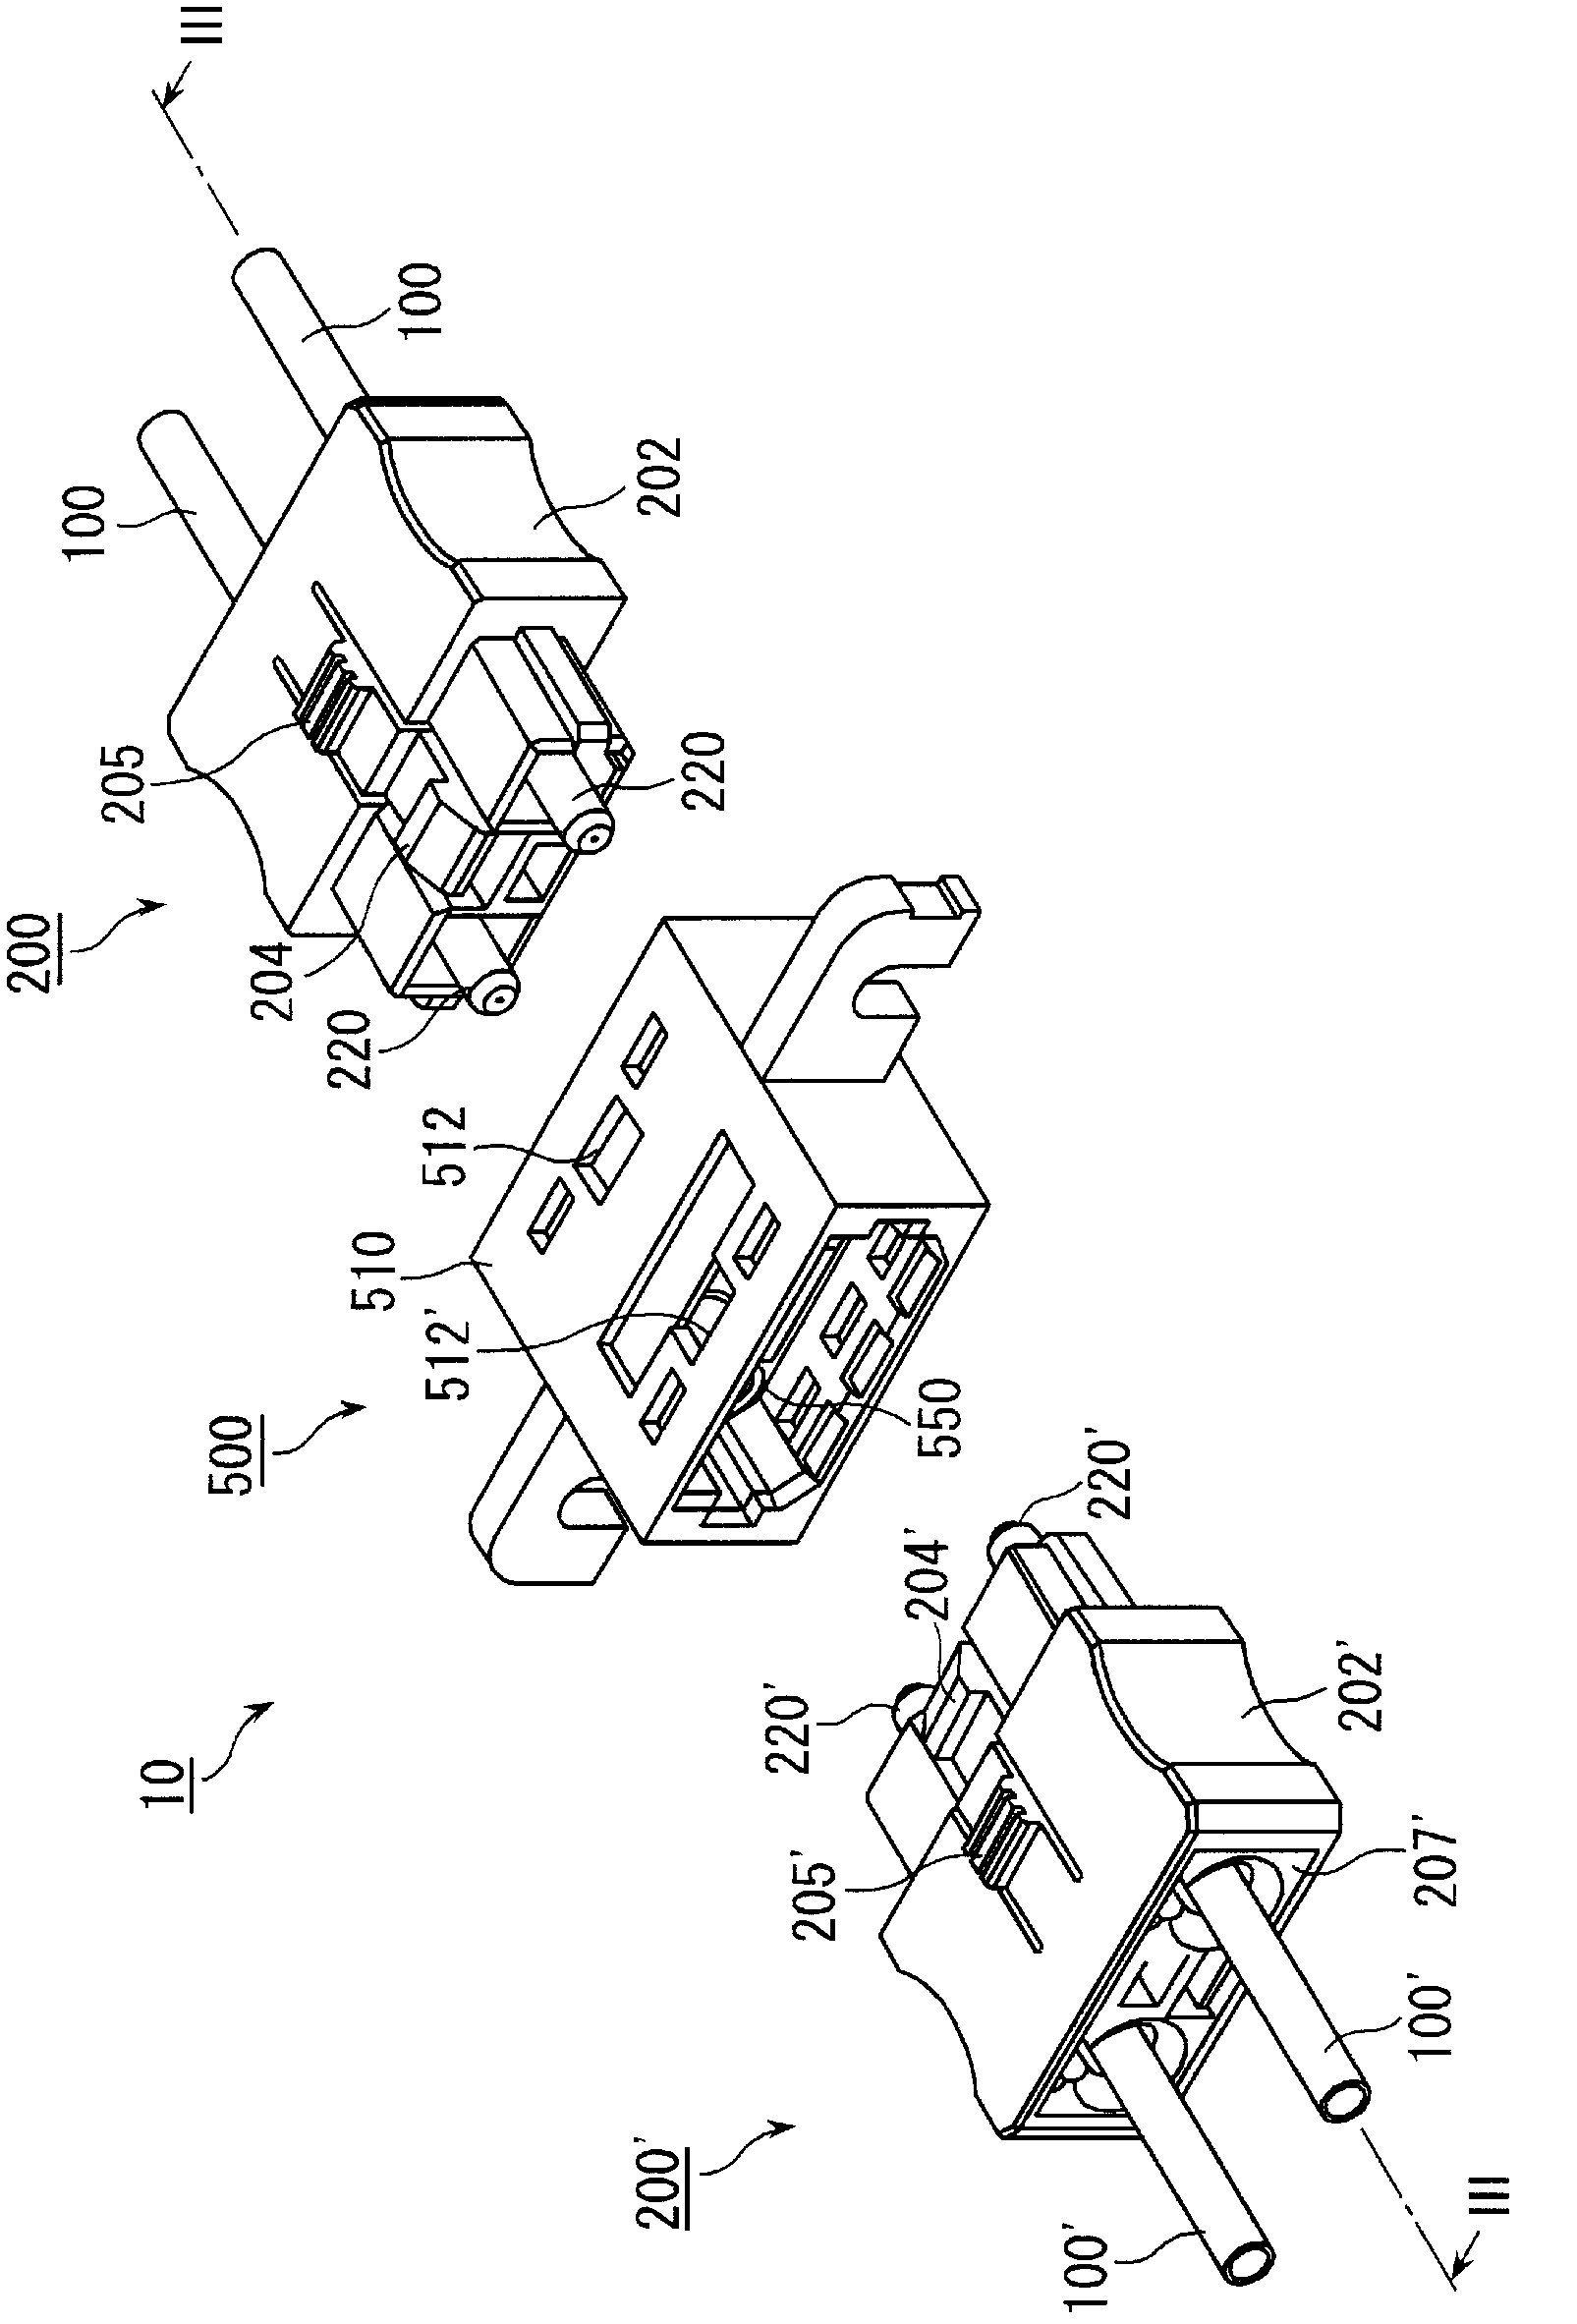 Optical connector apparatus